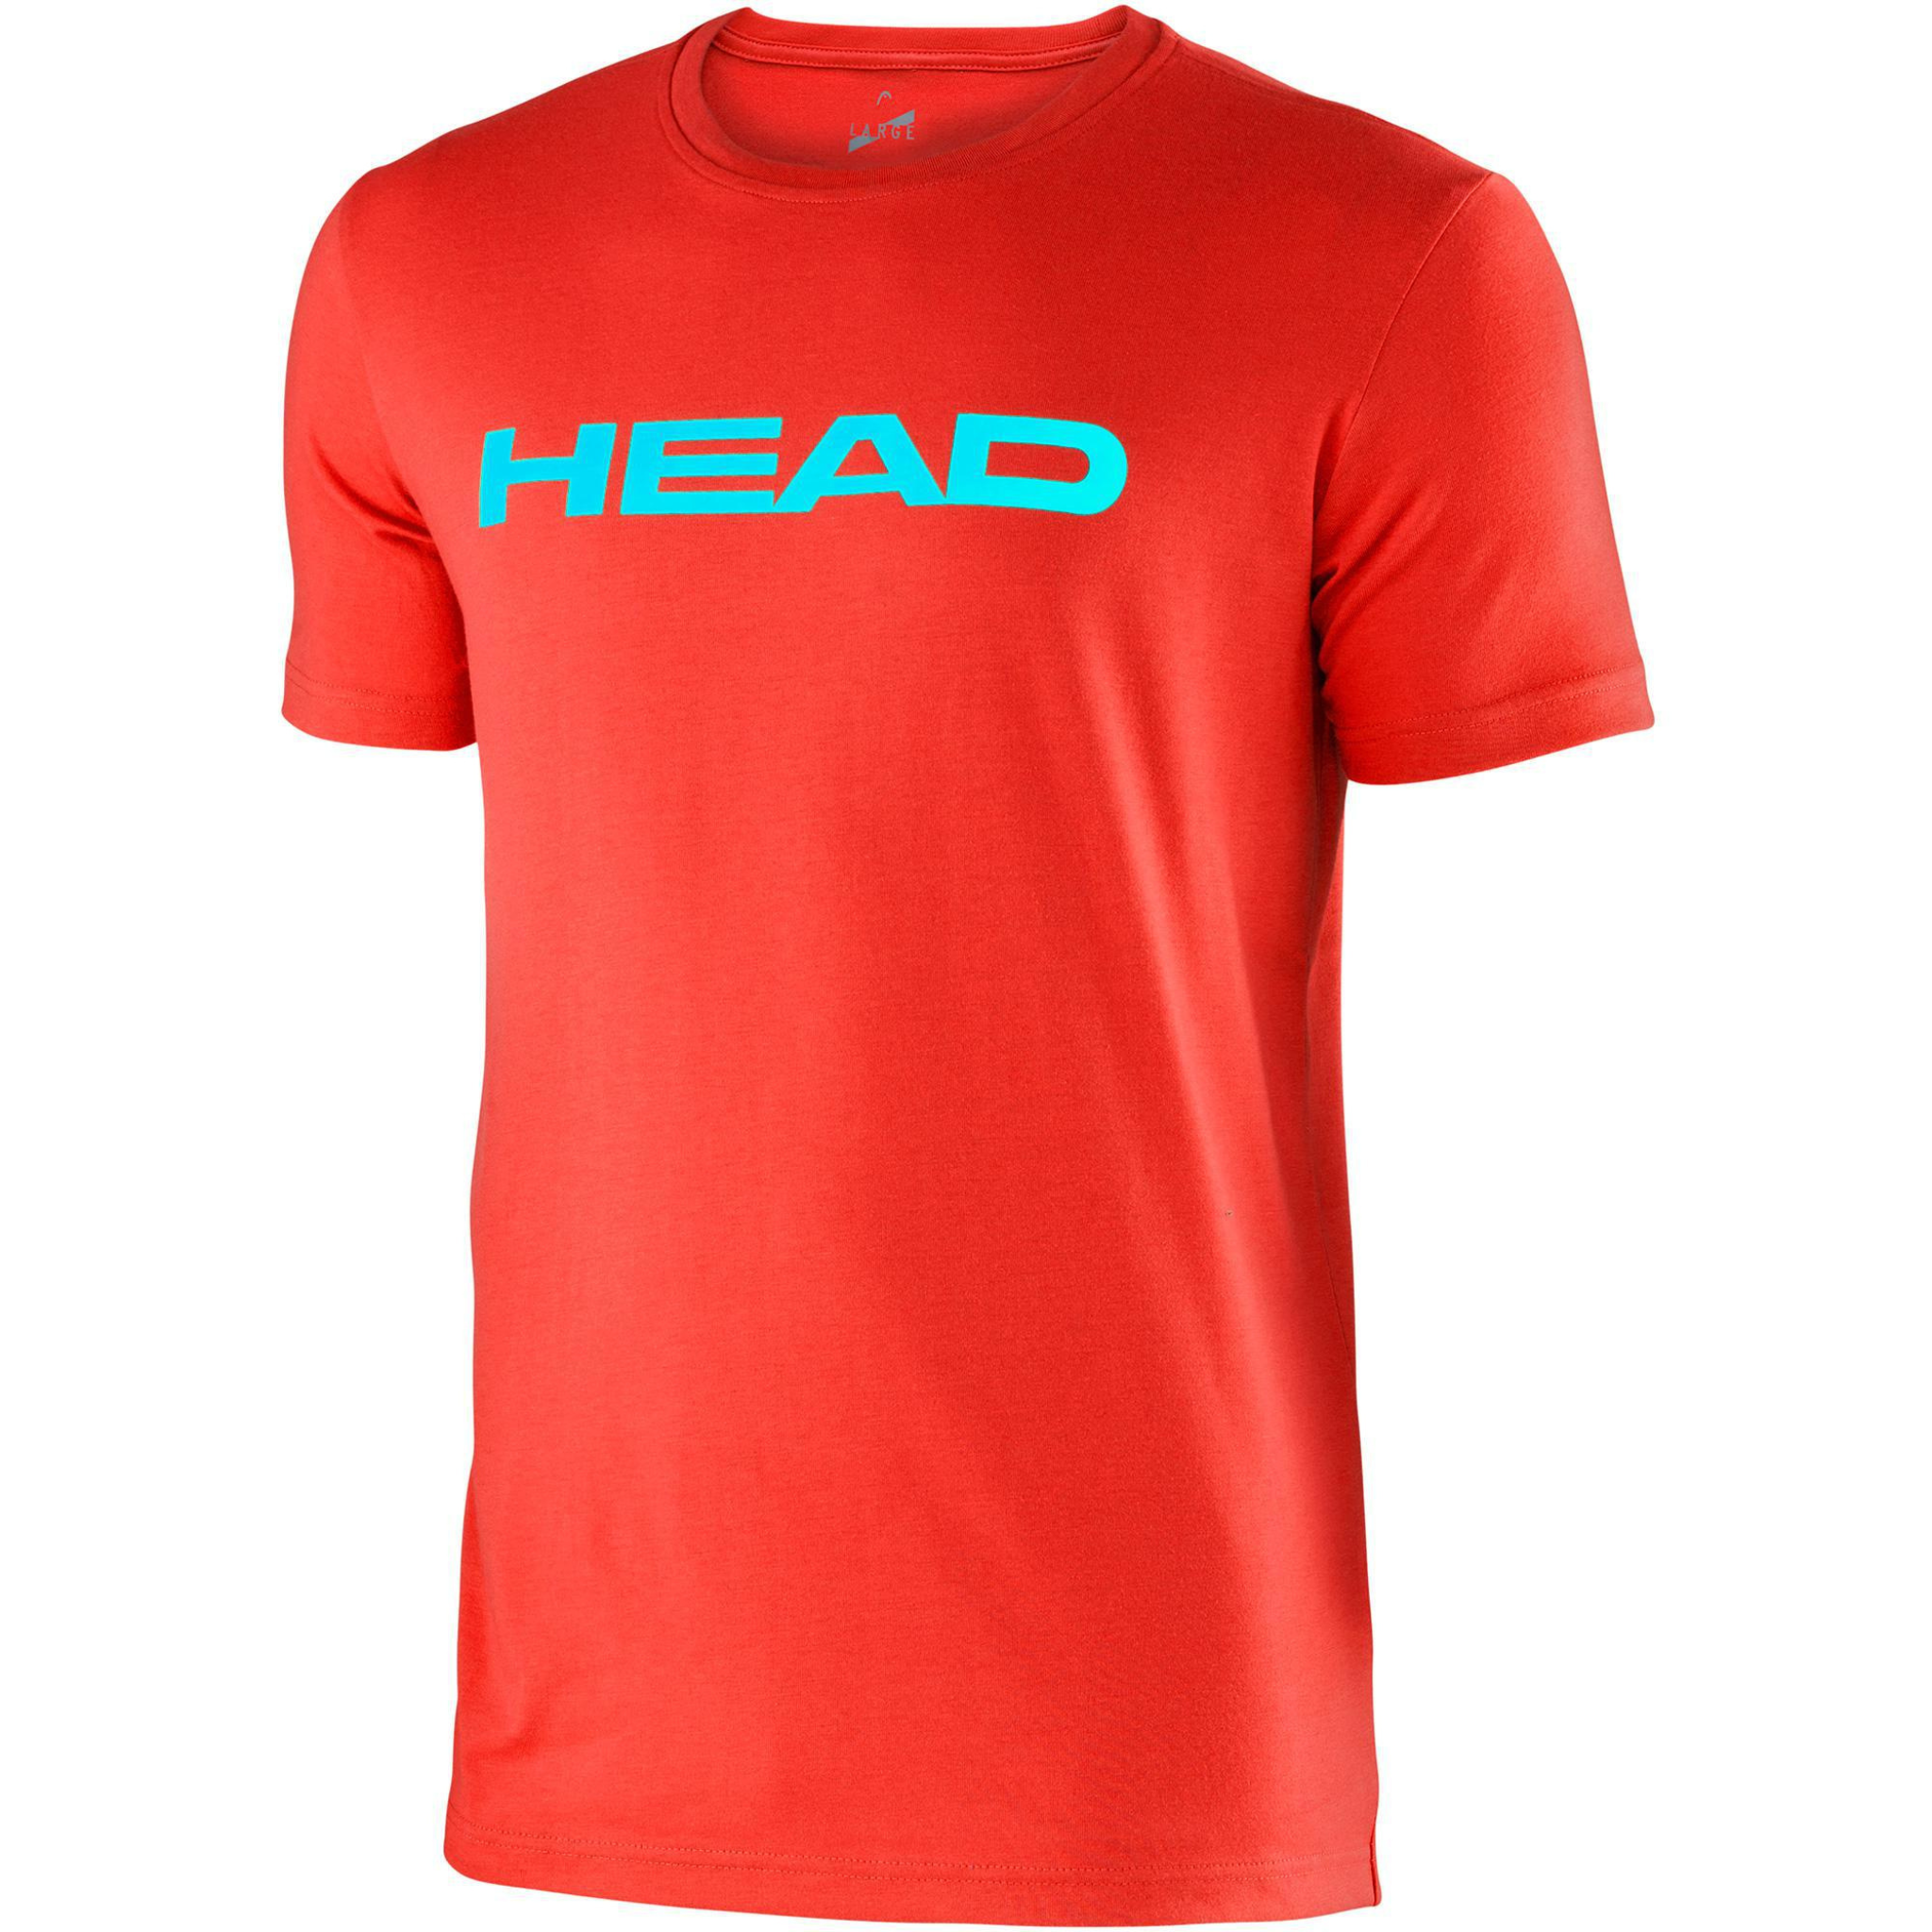 HEAD IVAN Jr T-shirt - Flame/Aqua